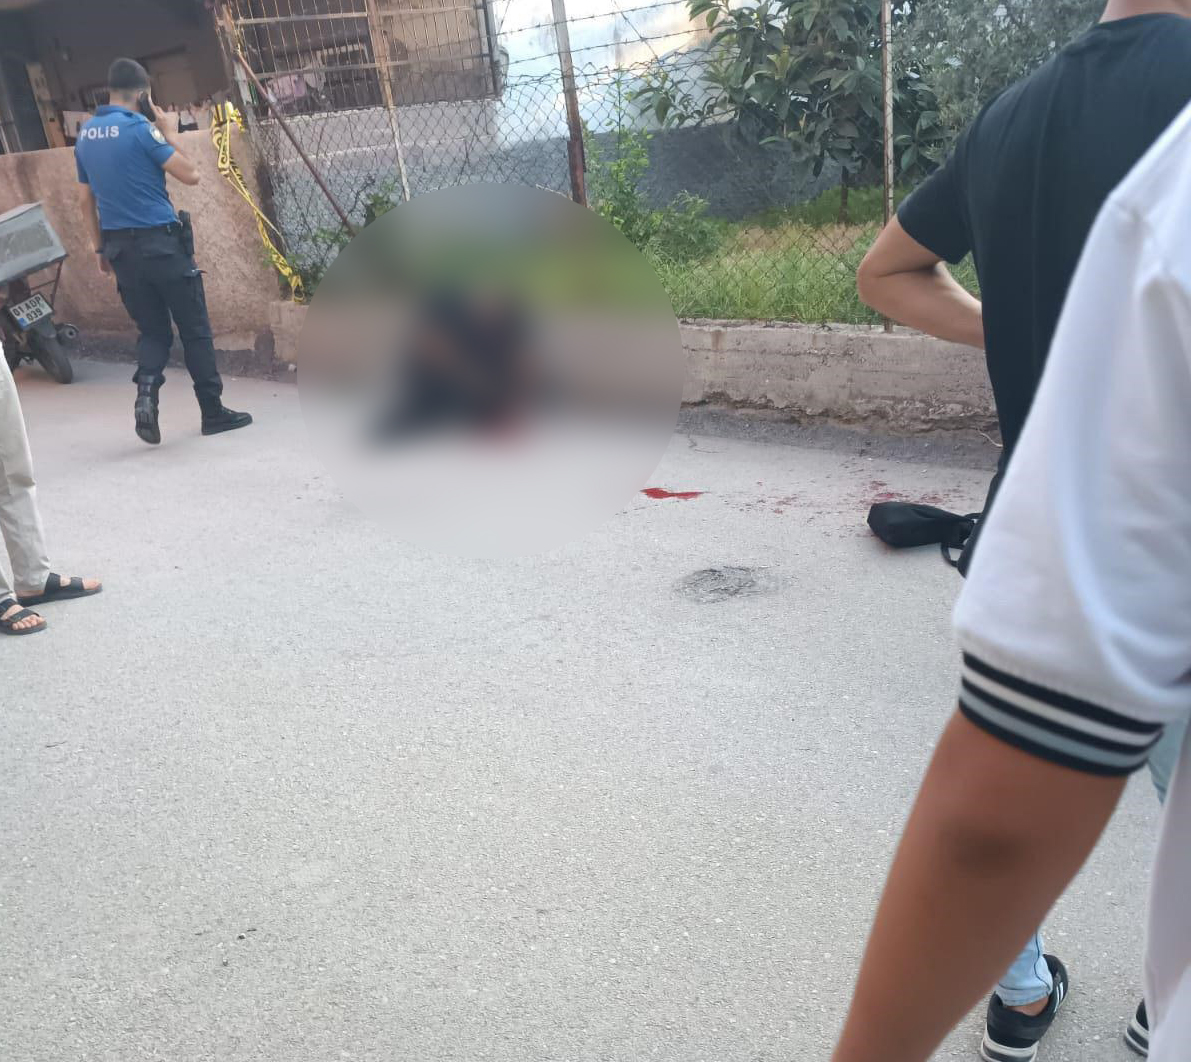 Adana'da kadın cinayeti